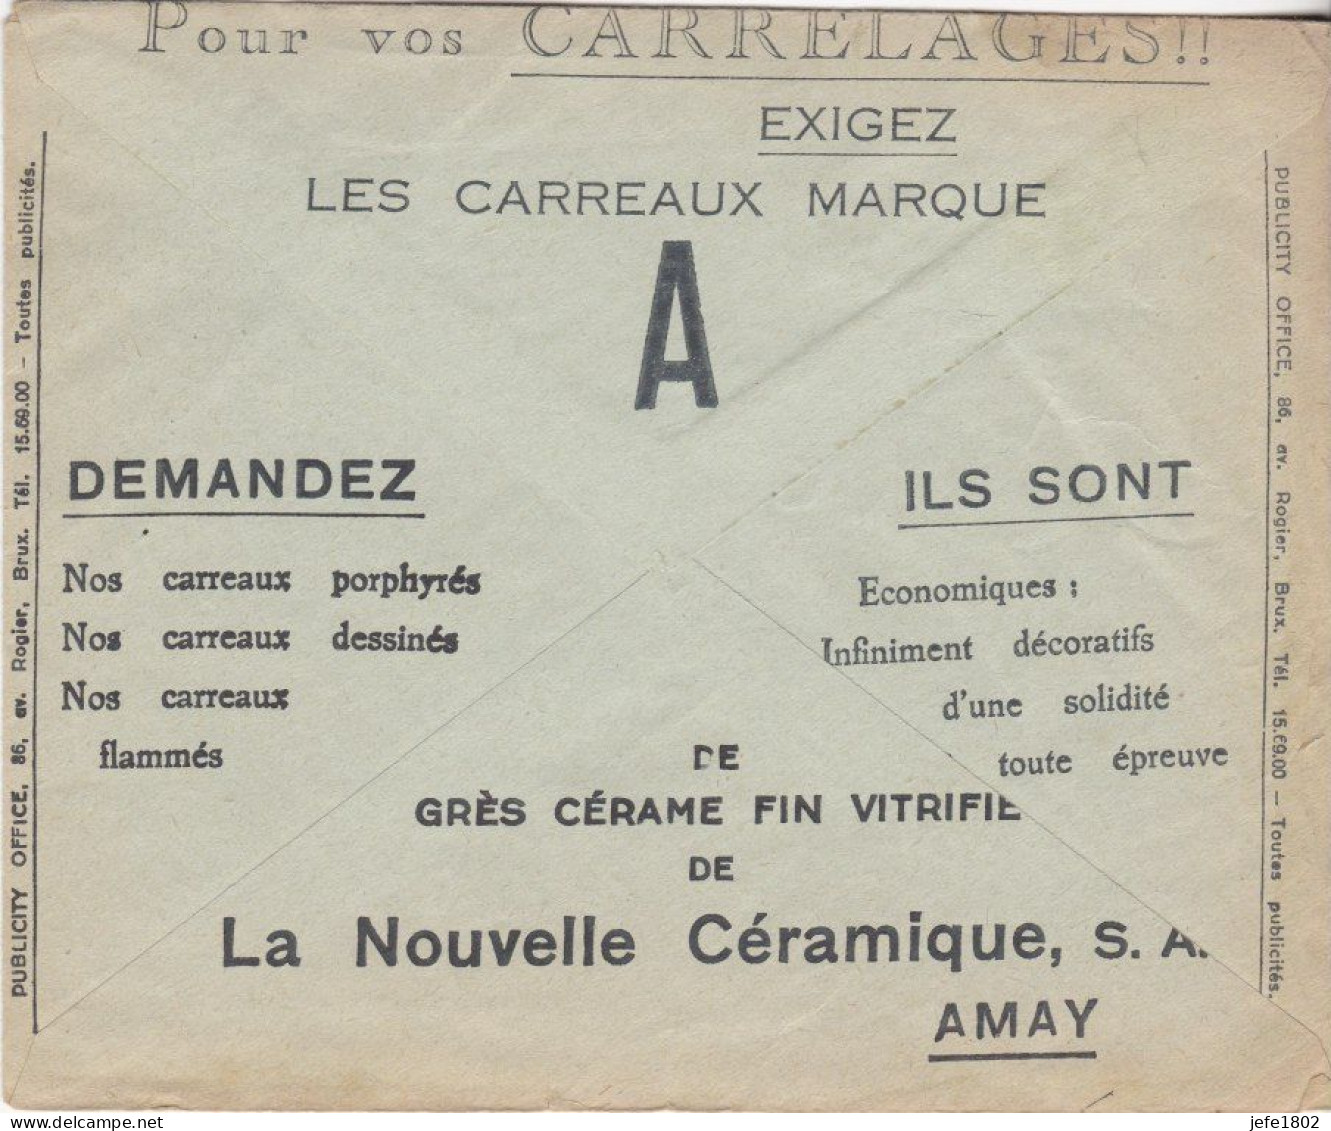 La Nouvelle Céramique - Carrelages - Porphyrés - Flammés - Décoratifs - Postcards 1934-1951